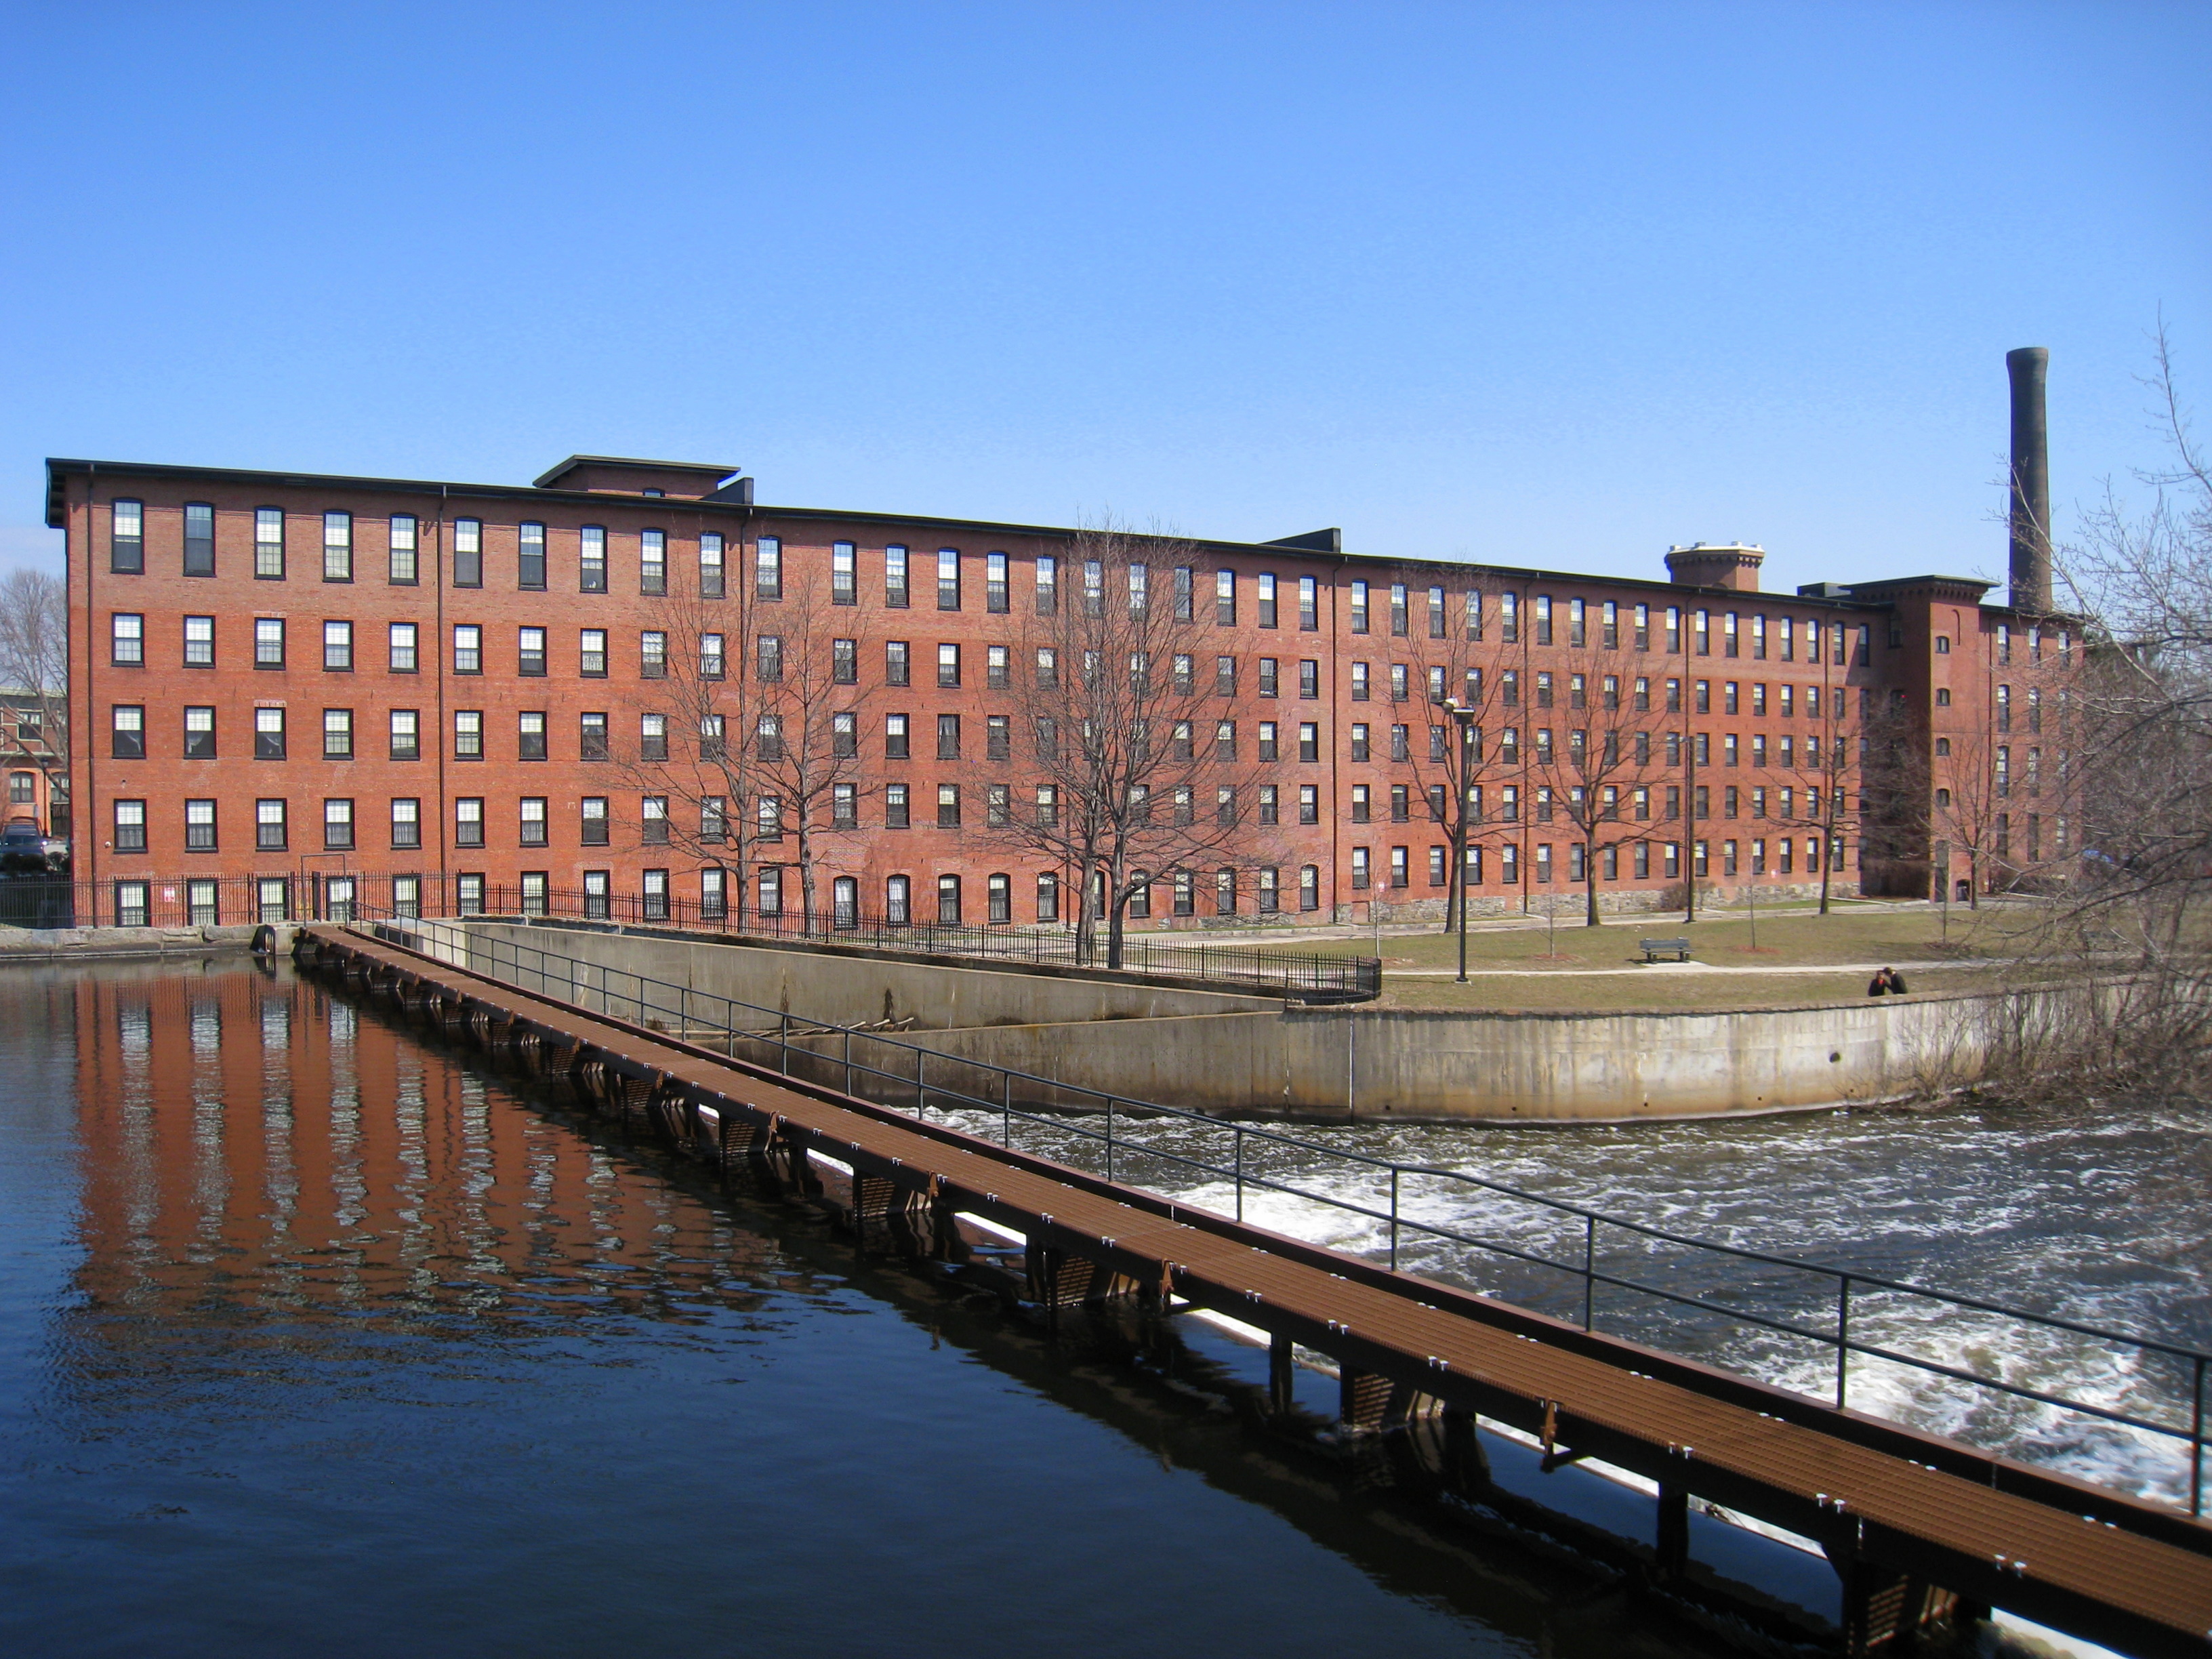 Boston Manufacturing Company mill complex, Waltham, MA - 1